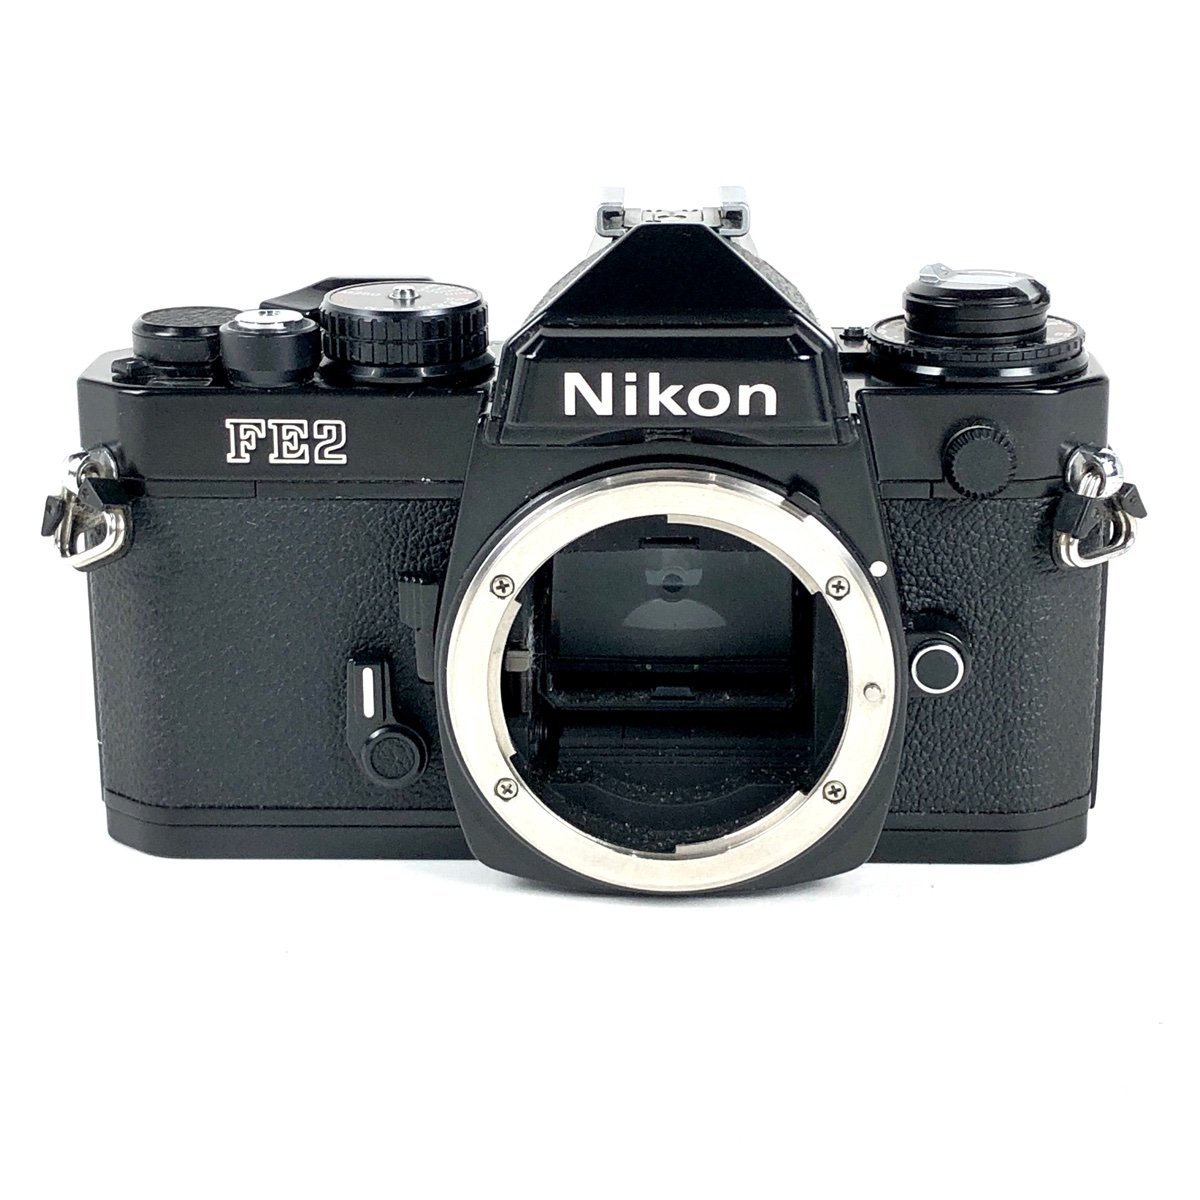 ニコン Nikon FE2 ブラック ボディ [ジャンク品] フィルム マニュアルフォーカス 一眼レフカメラ 【中古】_バイセル 31056_1